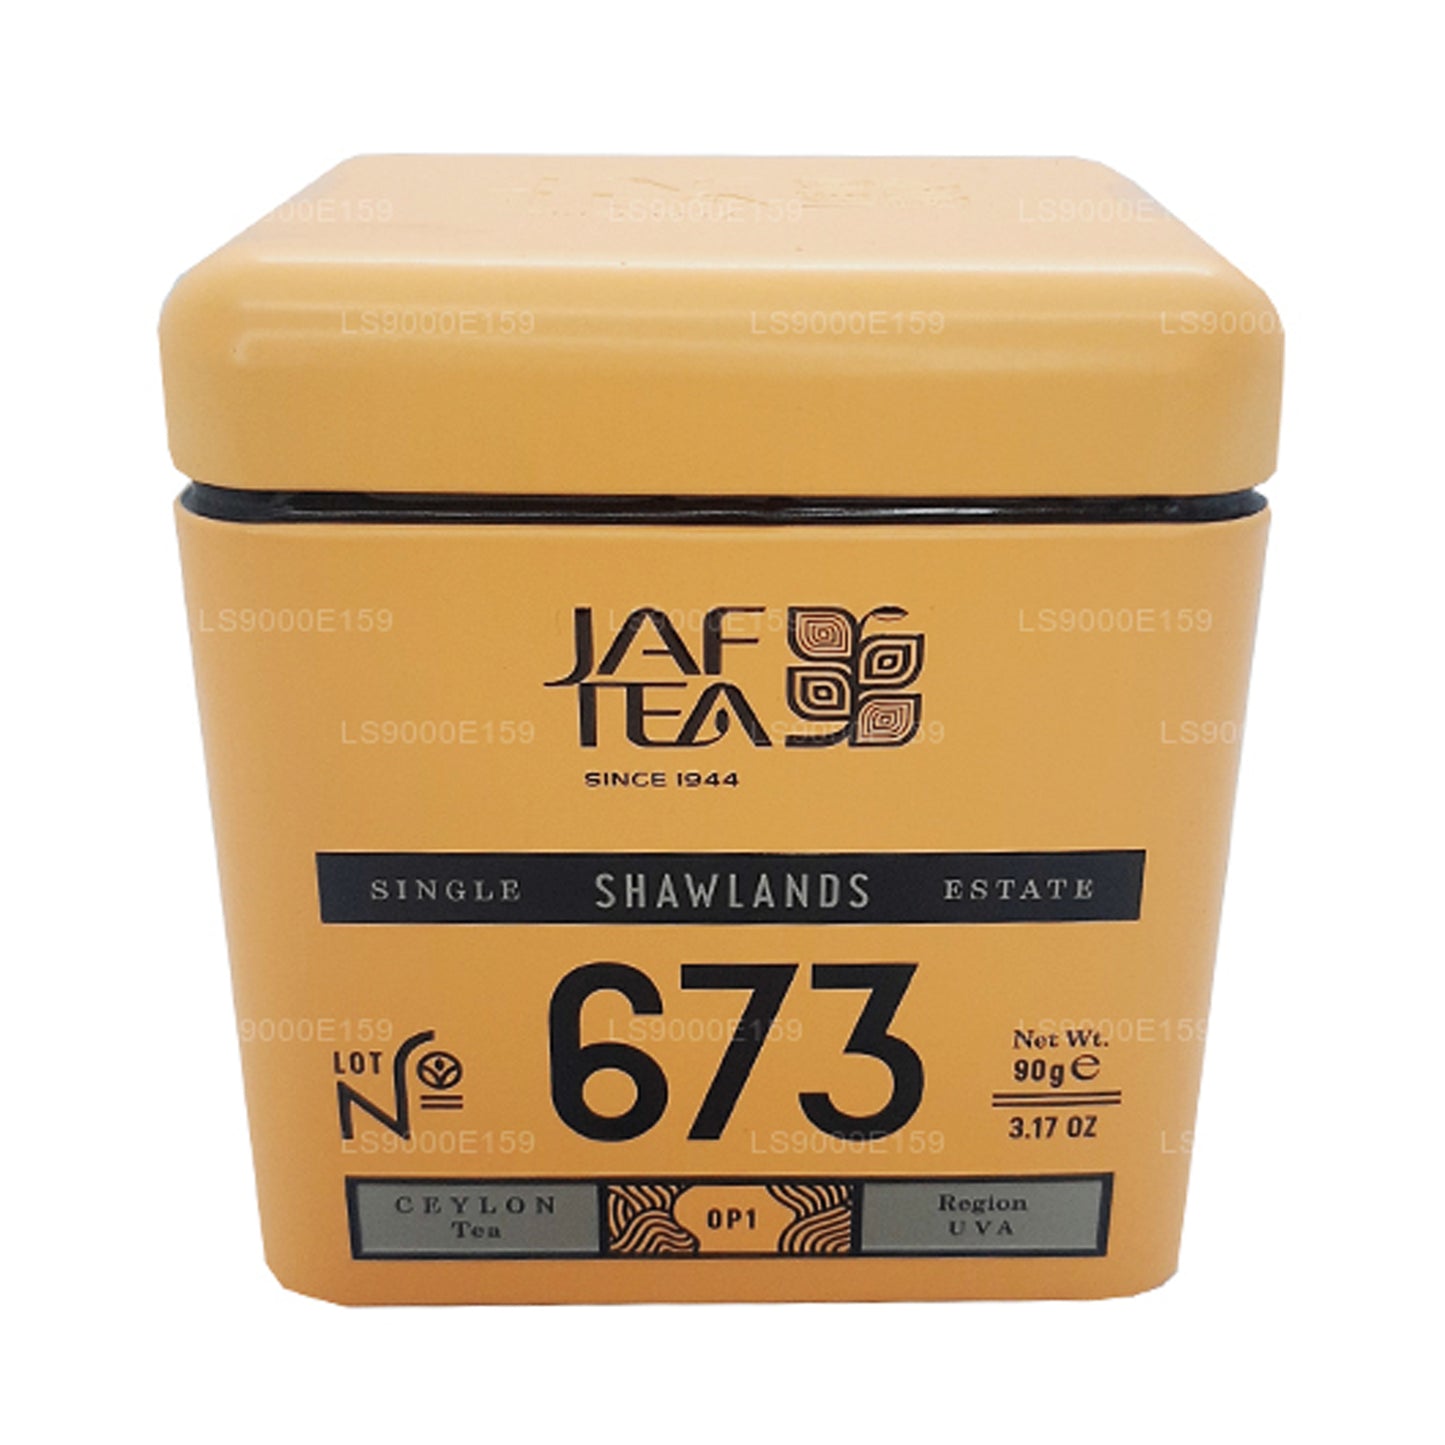 Jaf Tea Single Estate Collection Shawlands Dose, 90 g